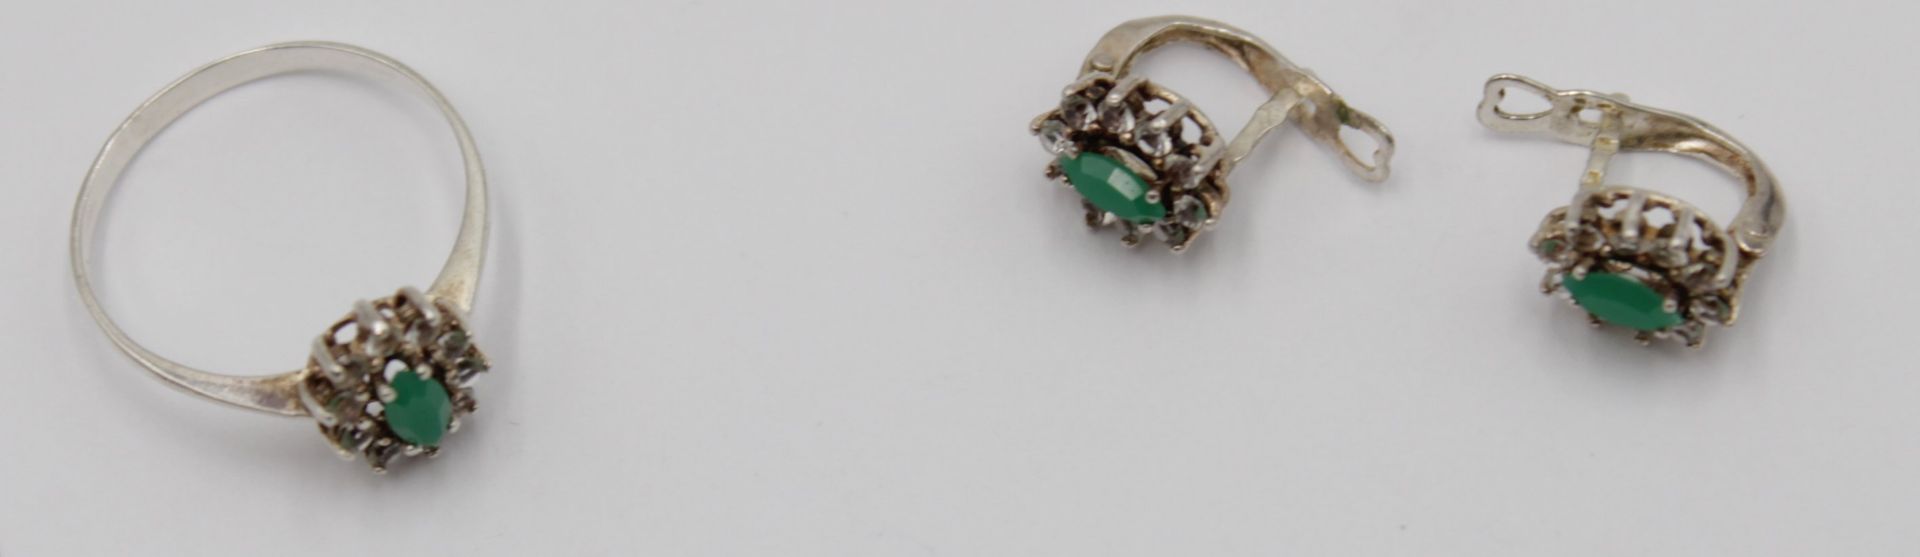 Silber-Schmuckset, Collierkette, Ring und Paar Ohrhänger, besetzt mit grünen u. klaren Steinen, zus - Image 2 of 4